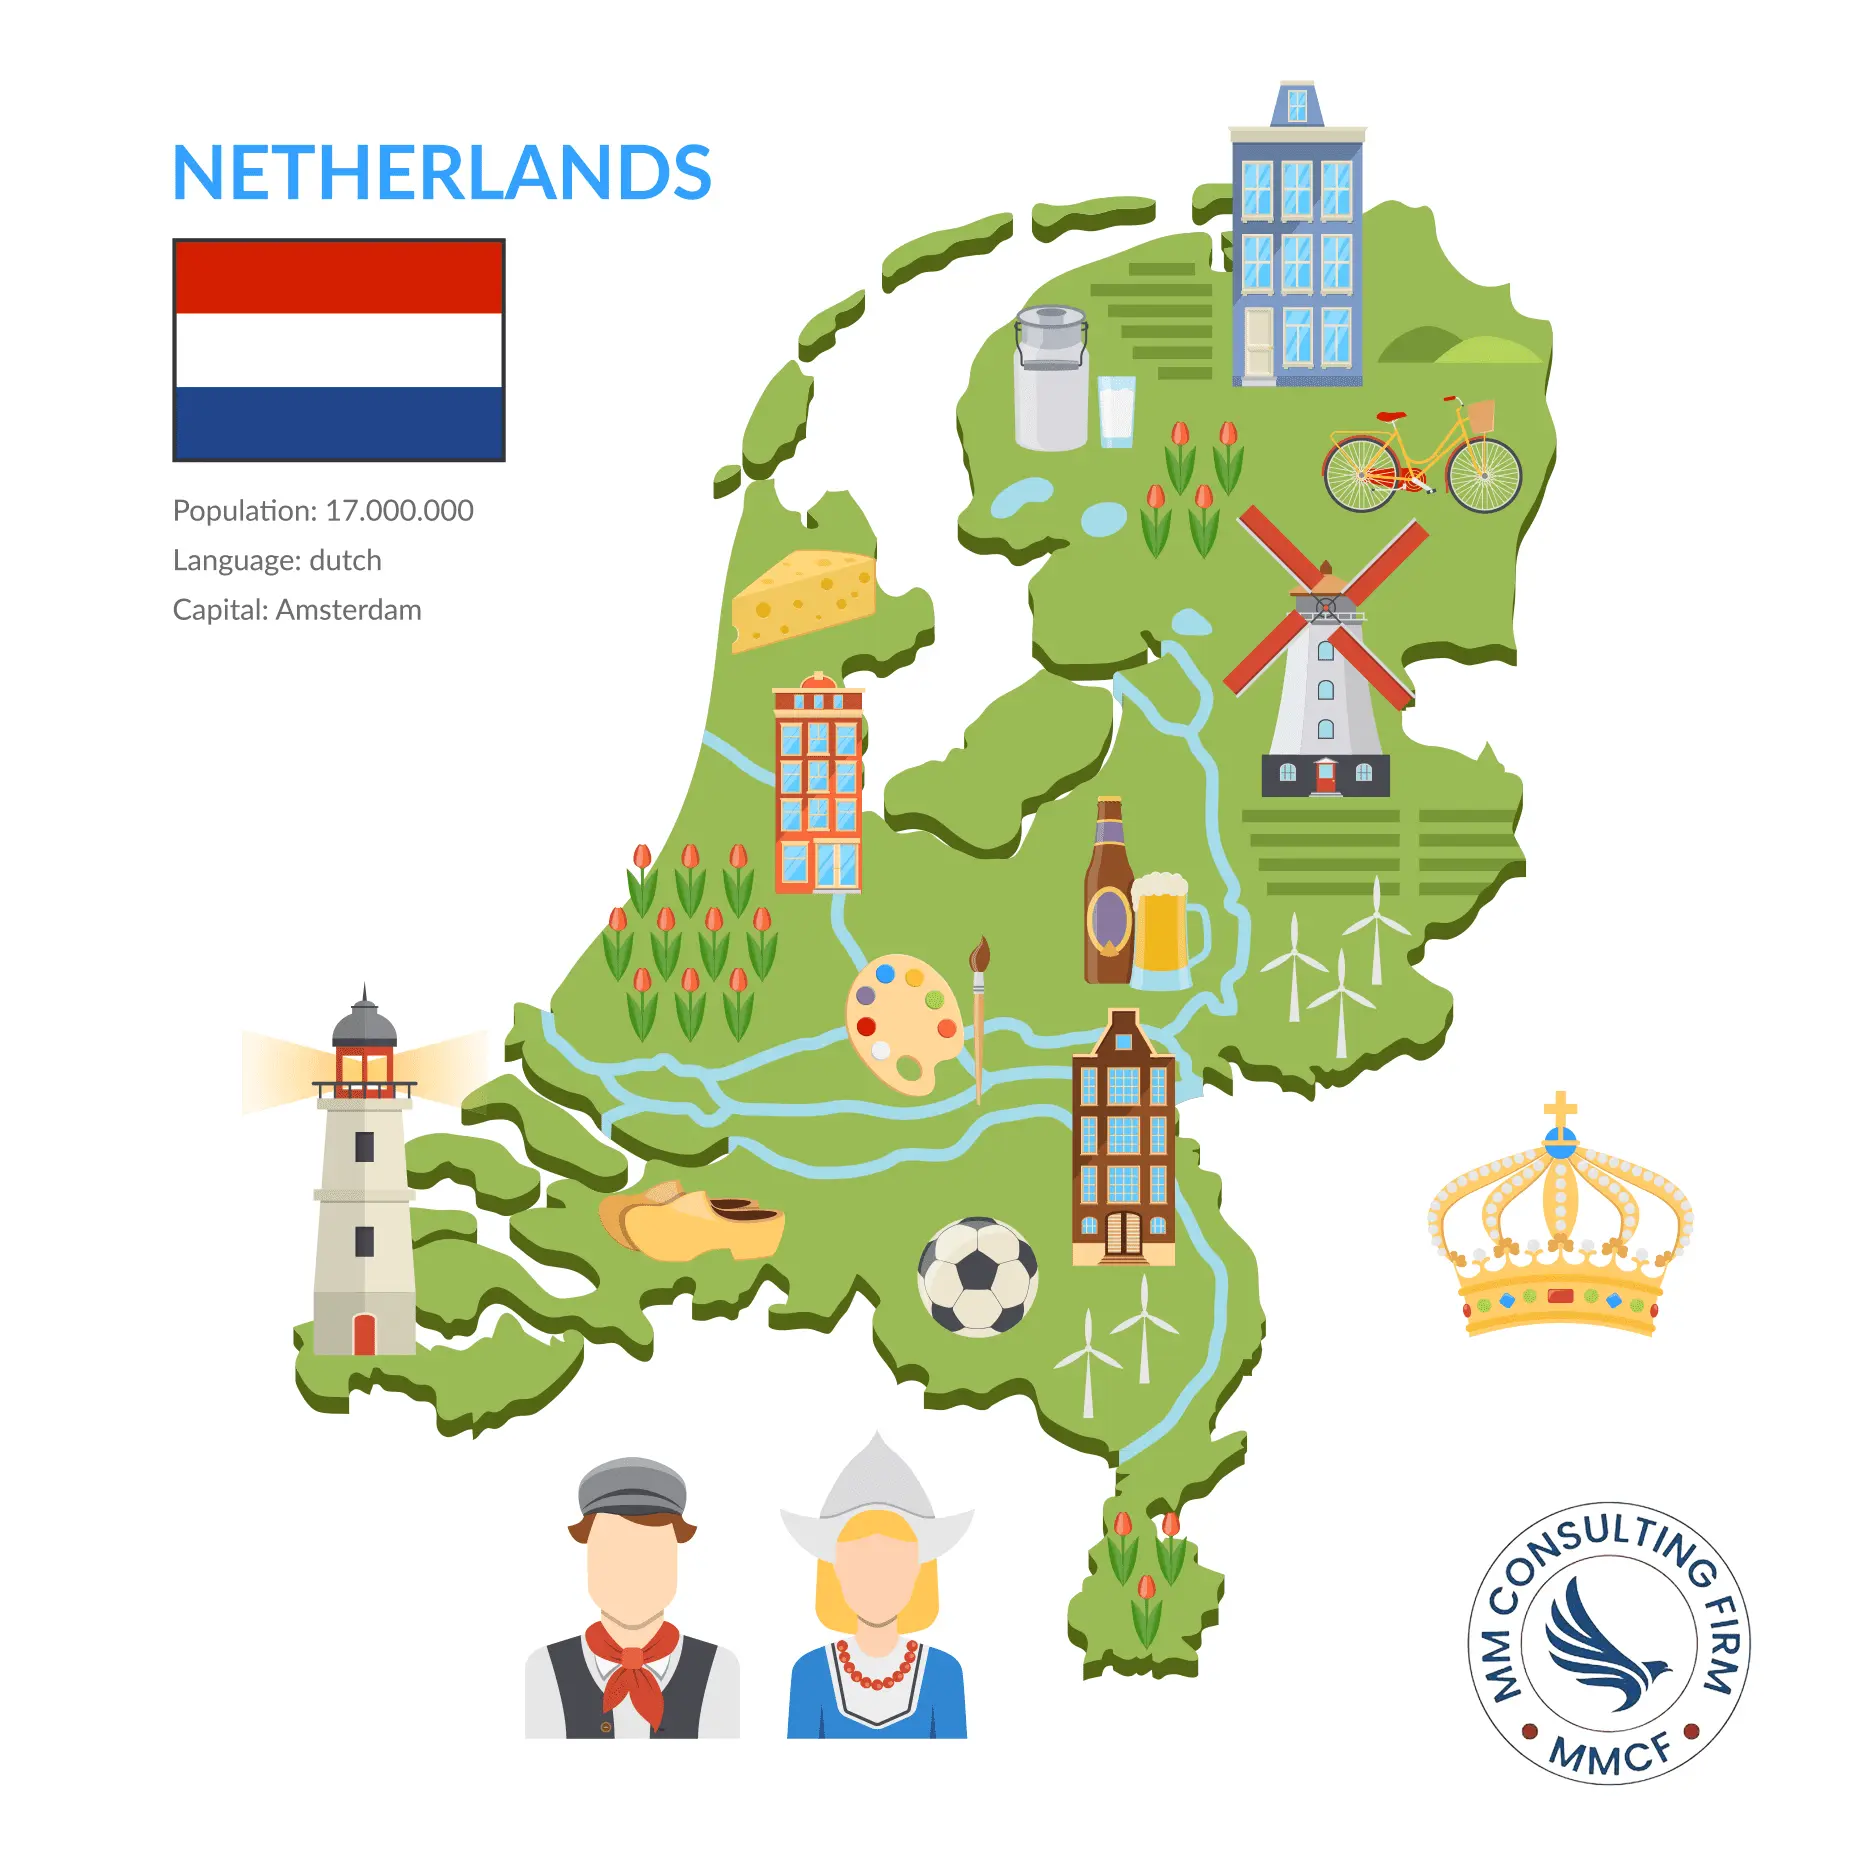 مهاجرت به هلند - تحصیل در هلند - اینفوگرافی - نقشه هلند در یک نگاه